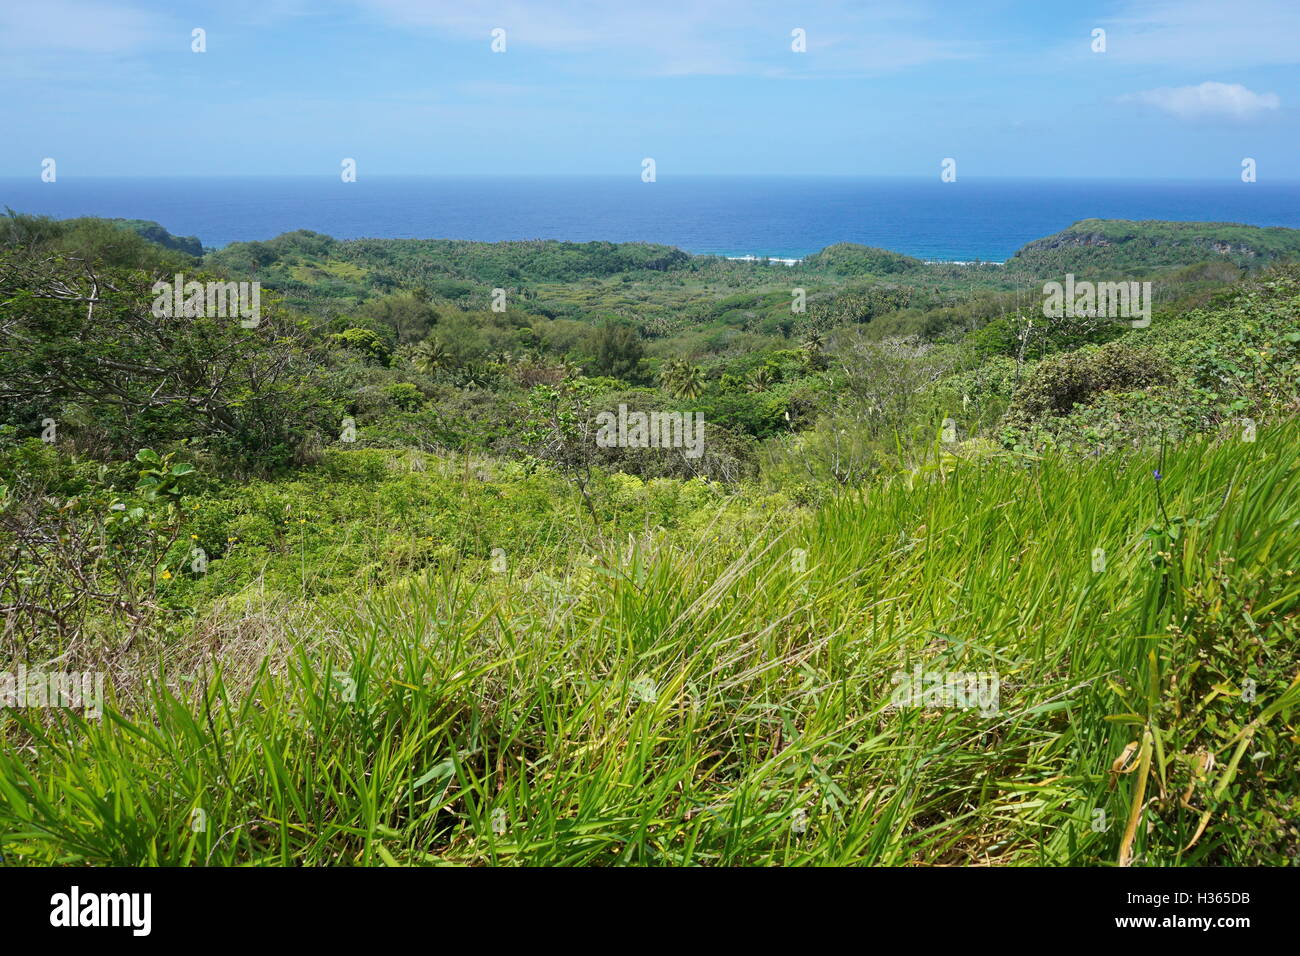 Paysage vert de la végétation depuis les hauteurs de l'île de Rurutu, dans l'océan Pacifique, l'archipel des Australes, Polynésie Française Banque D'Images